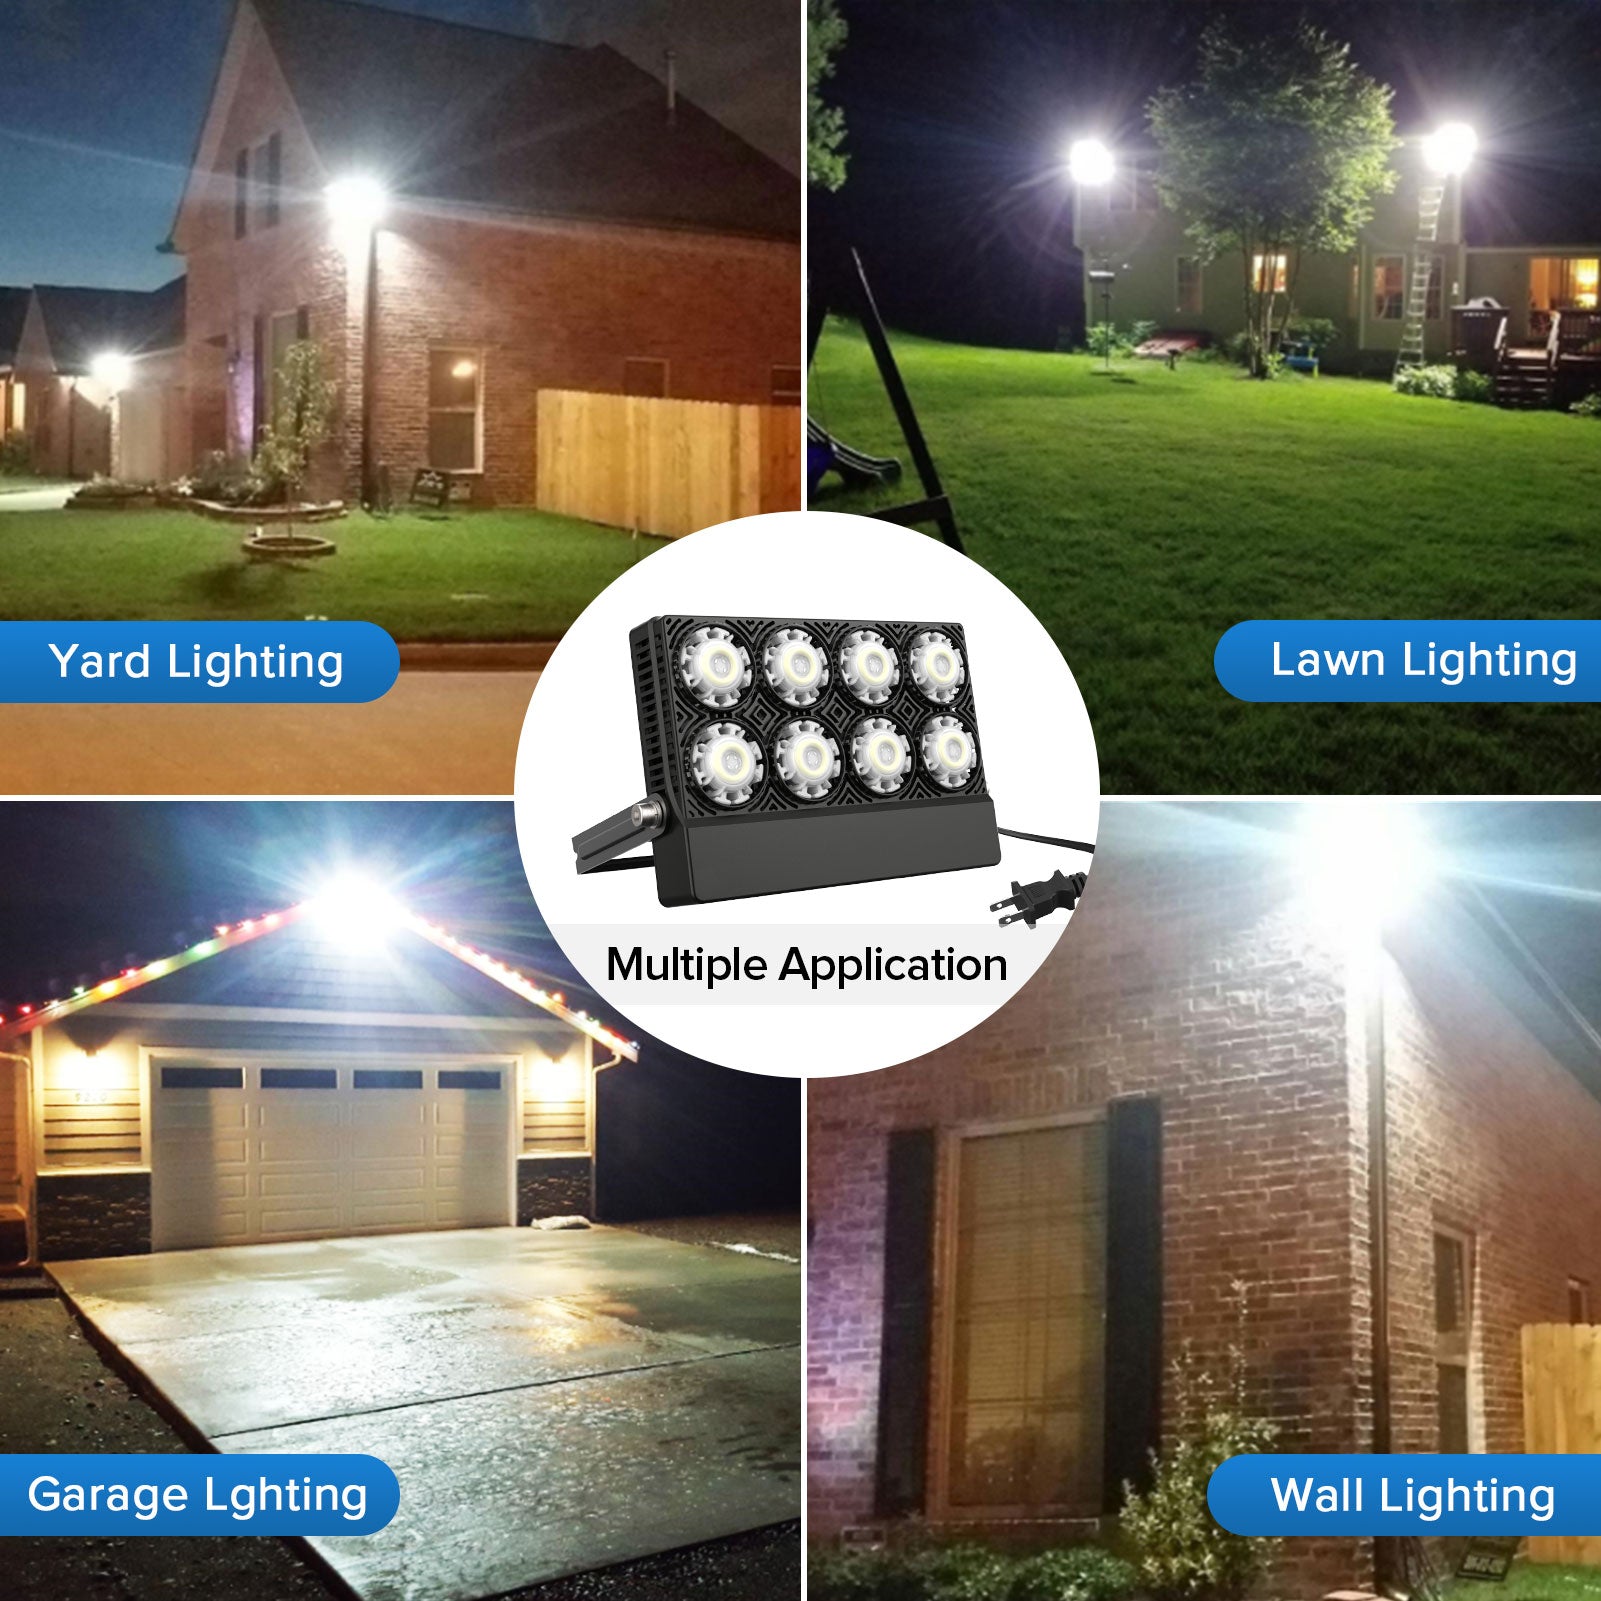 Multiple application for 50W LED Flood Light (US ONLY).Yard lighting，lawn lighting，garage lighting and wall lighting.